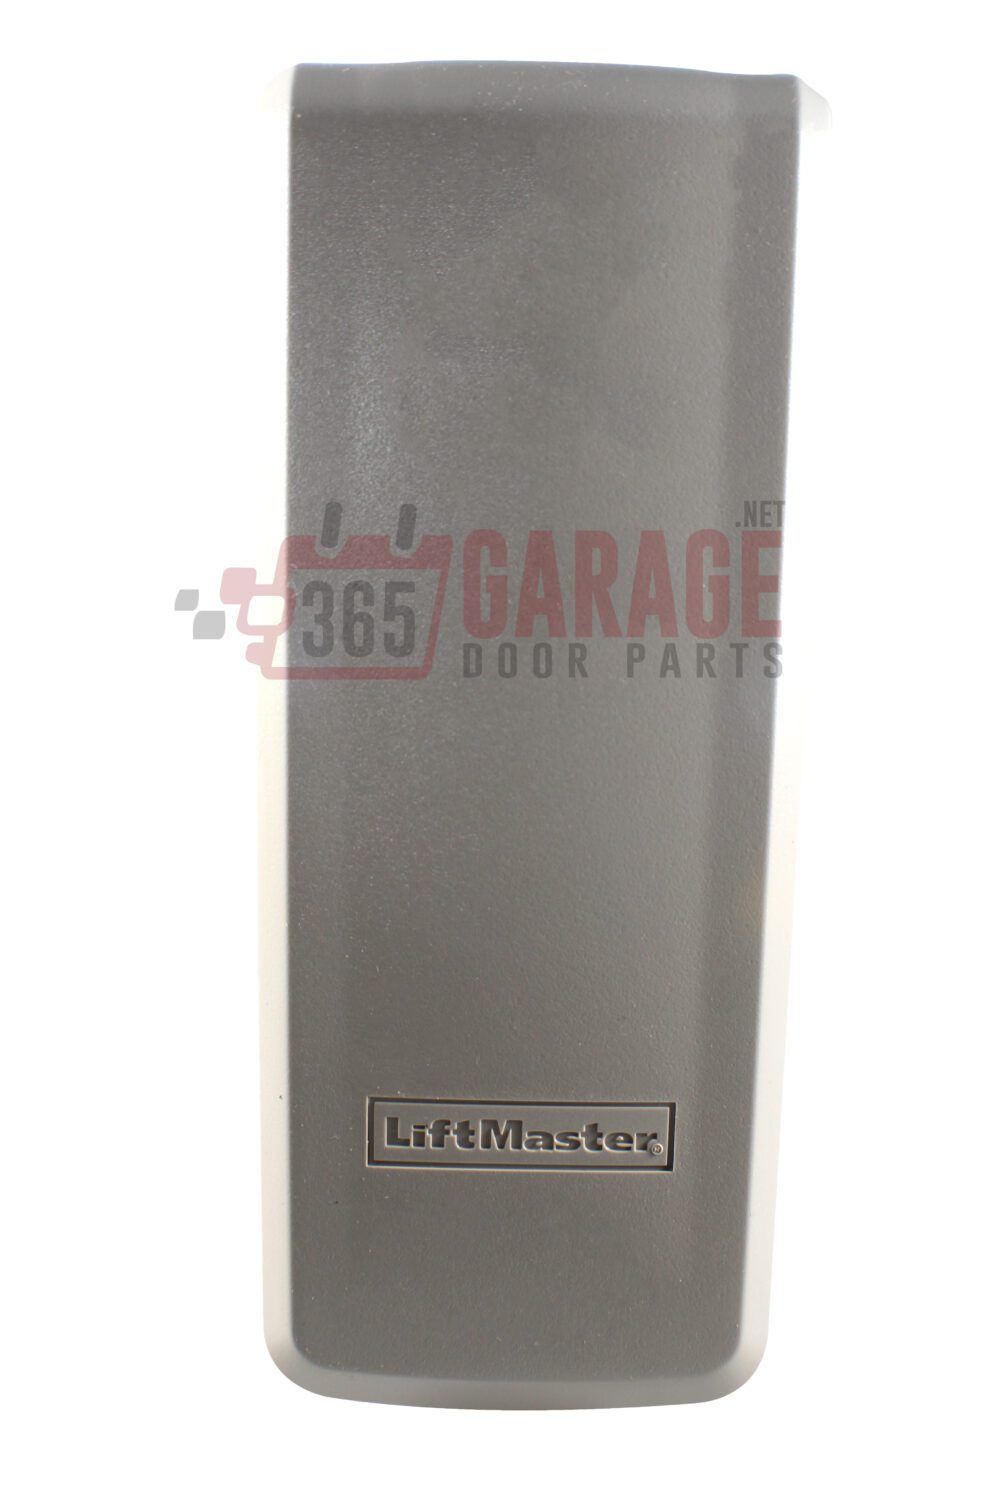 liftmaster garage door opener keypad replacement